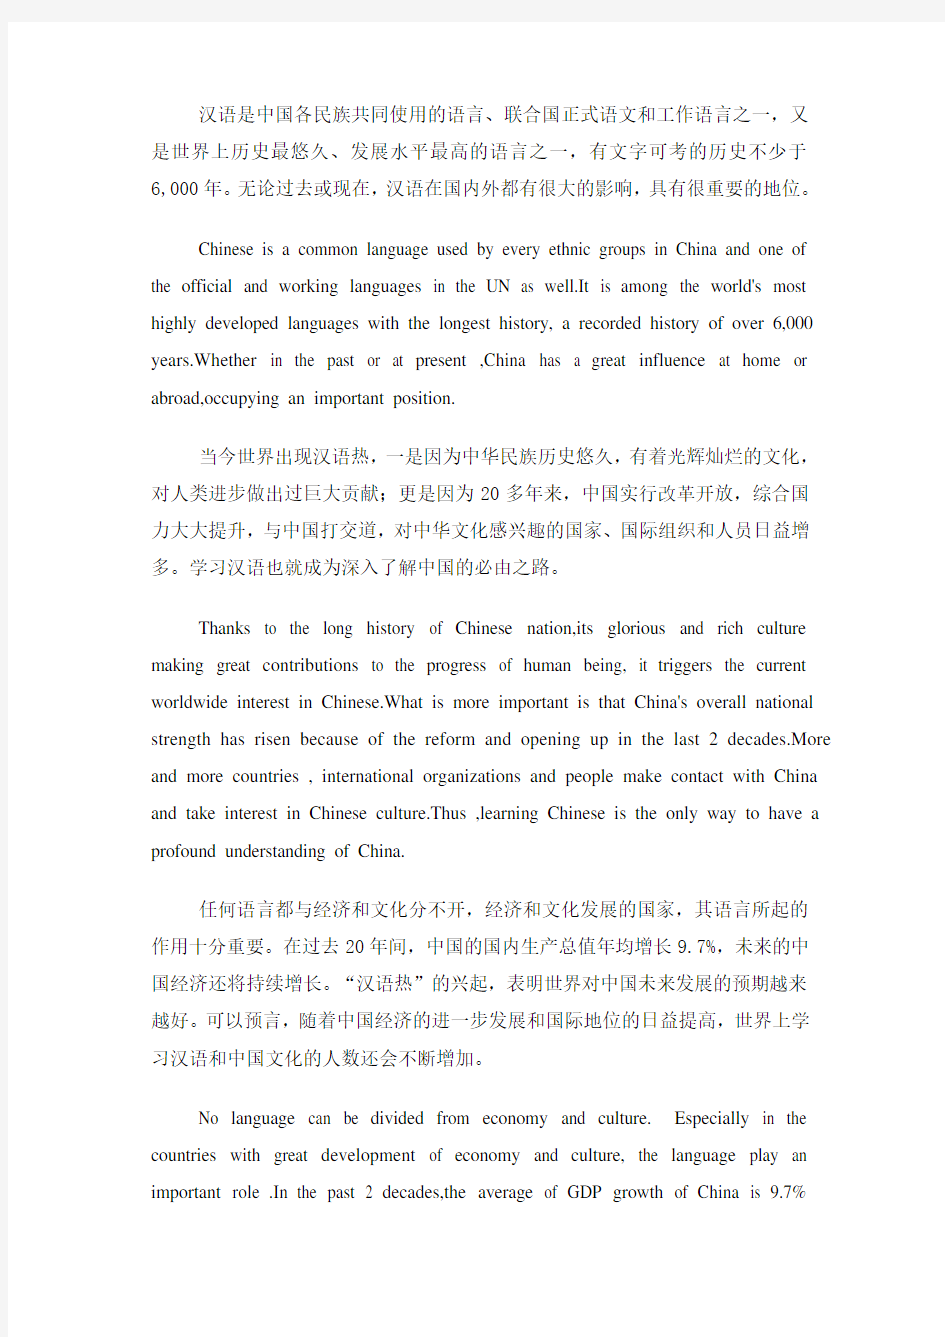 C-E Translation 世界兴起汉语热